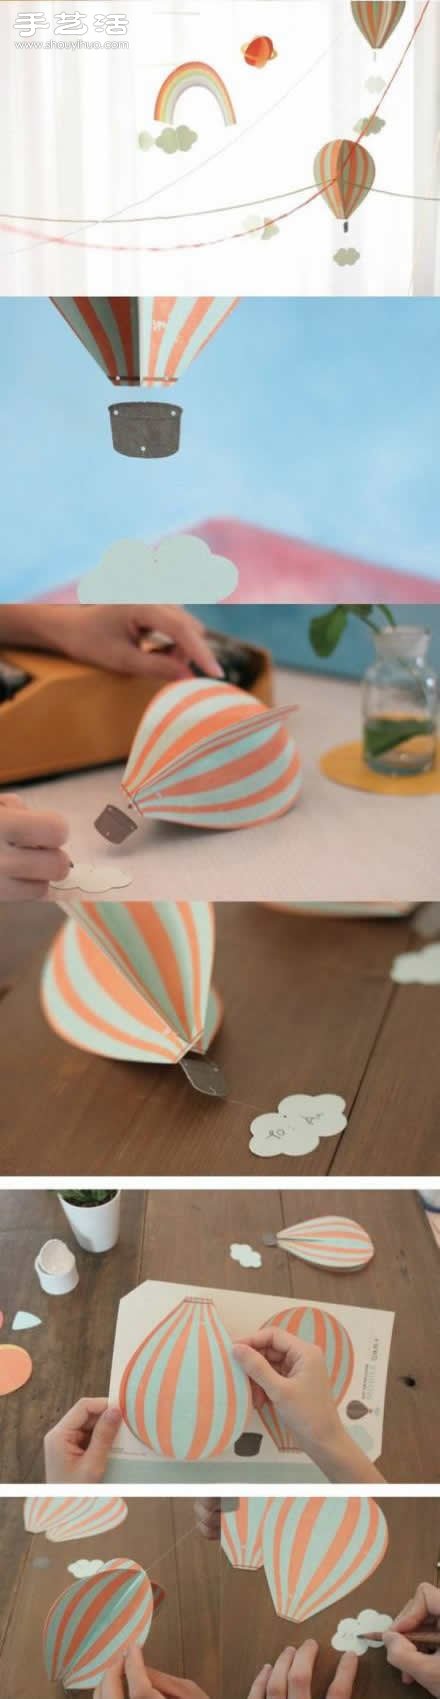 剪纸制作立体吊卡 DIY热气球吊卡装饰挂件